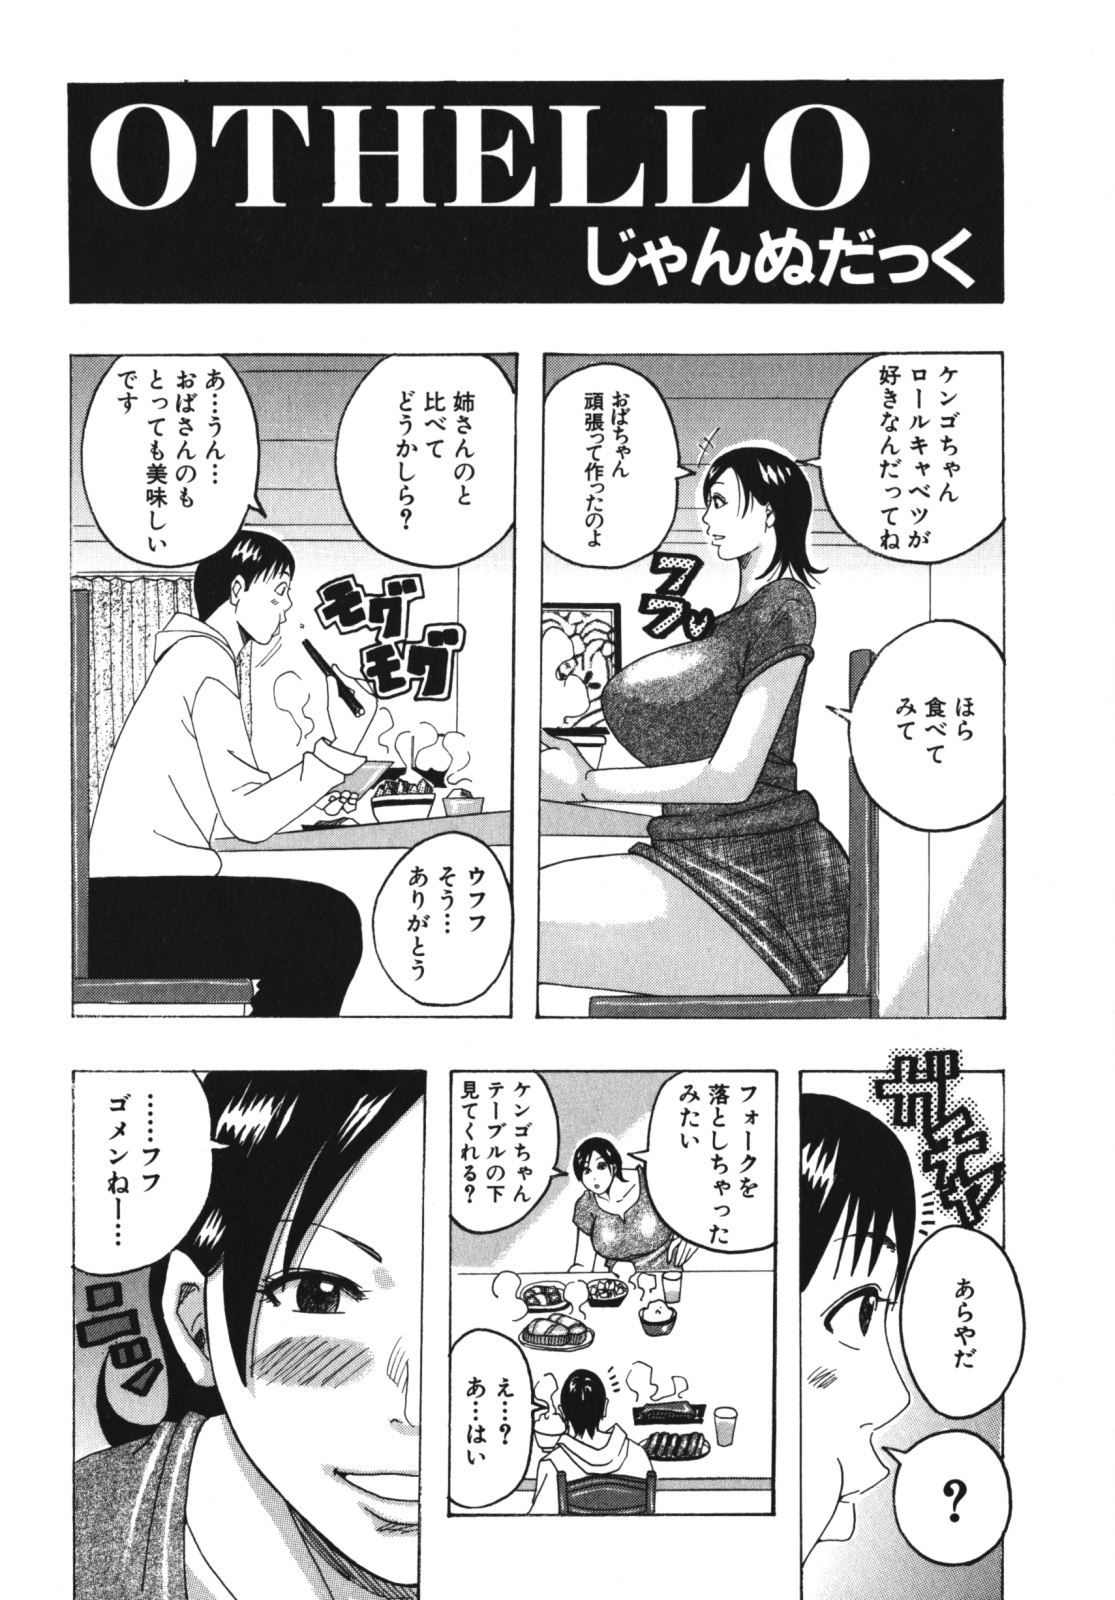 [Anthology] Geki Yaba Vol.4 - Namade Shitene page 47 full